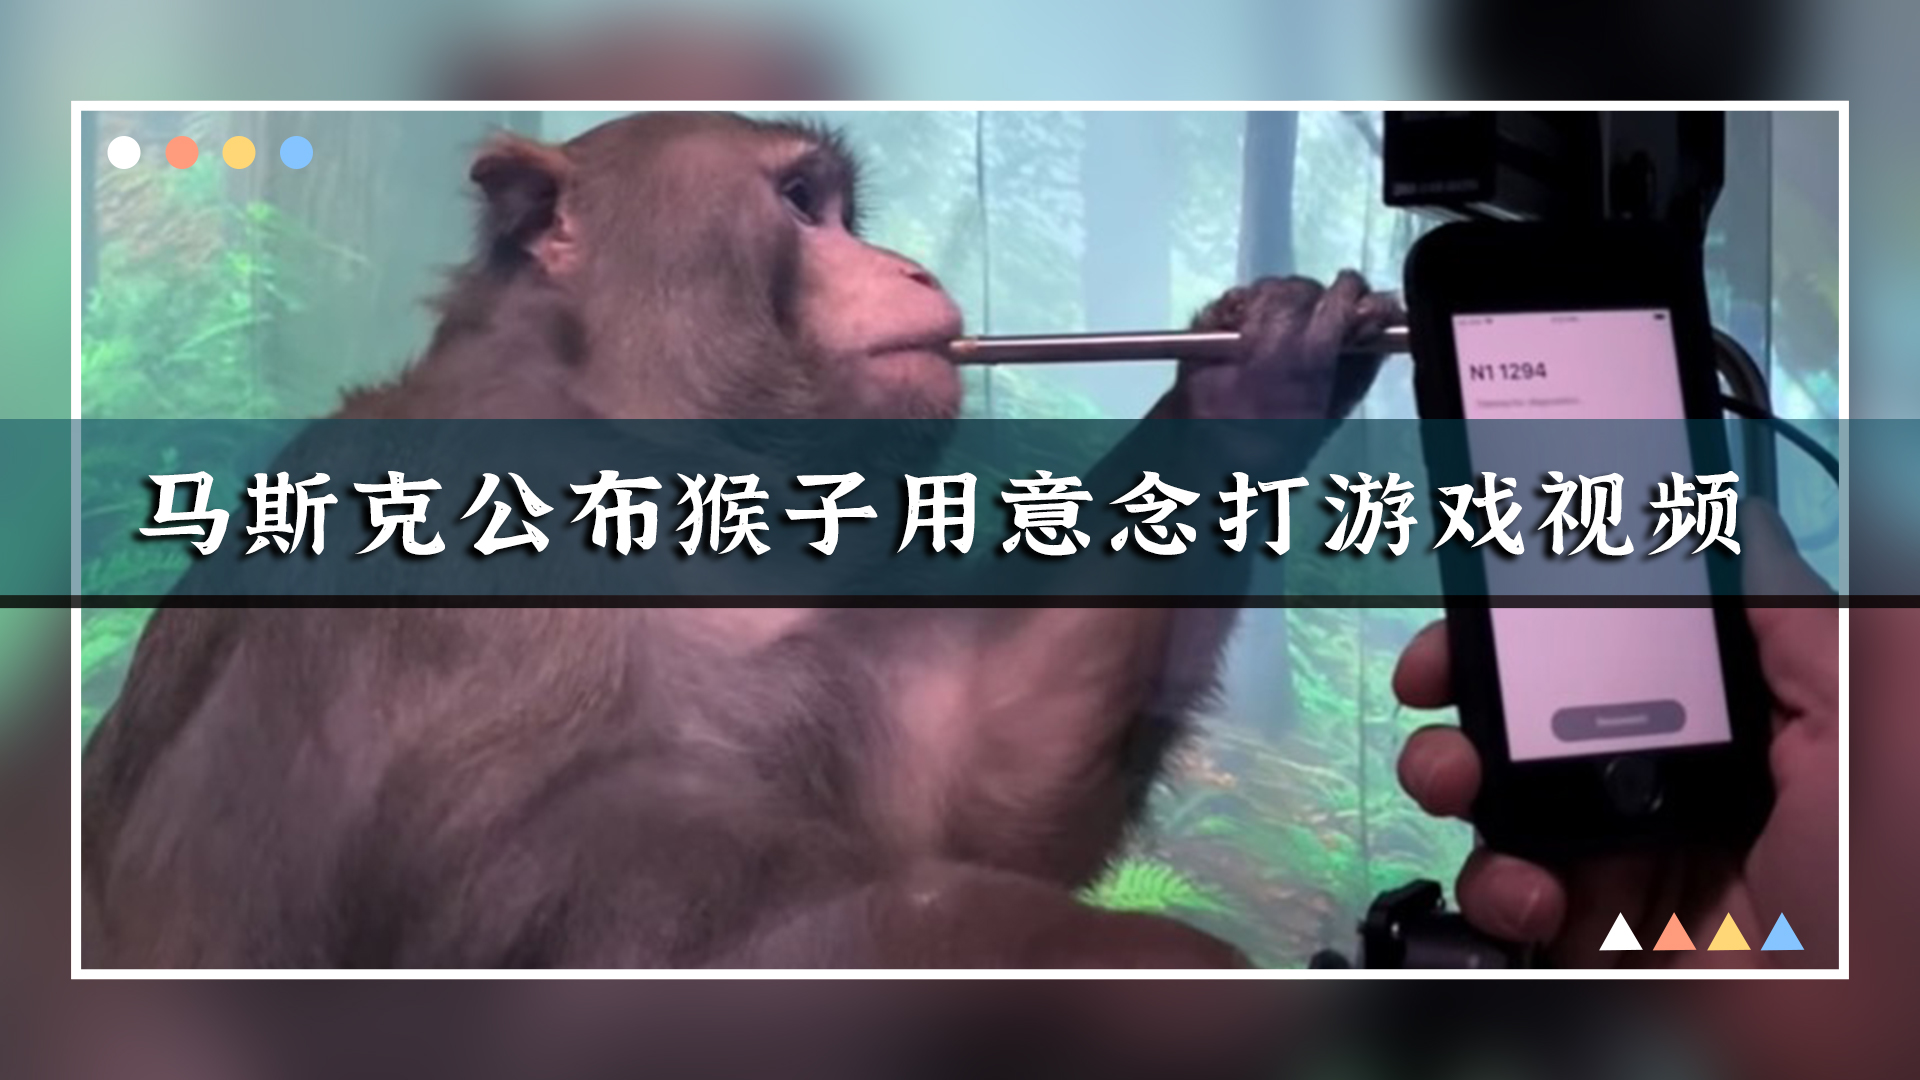 马斯克公布猴子用“意念”打游戏的视频